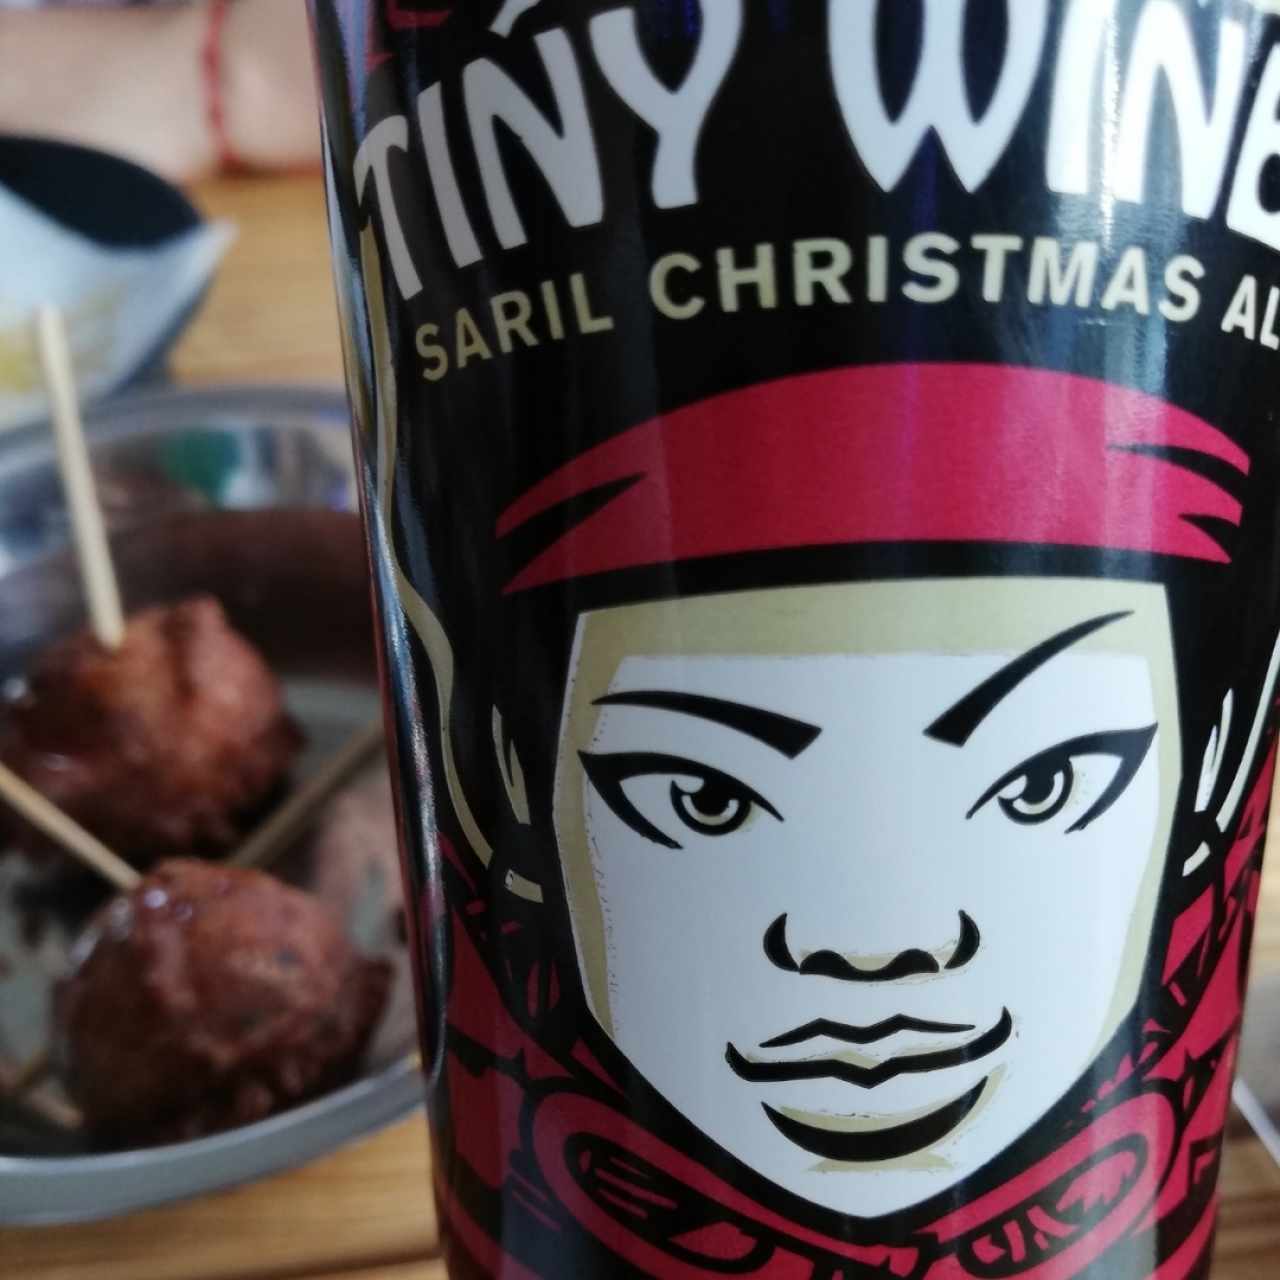 Tony Wine beer... con toques de Saril y jengibre